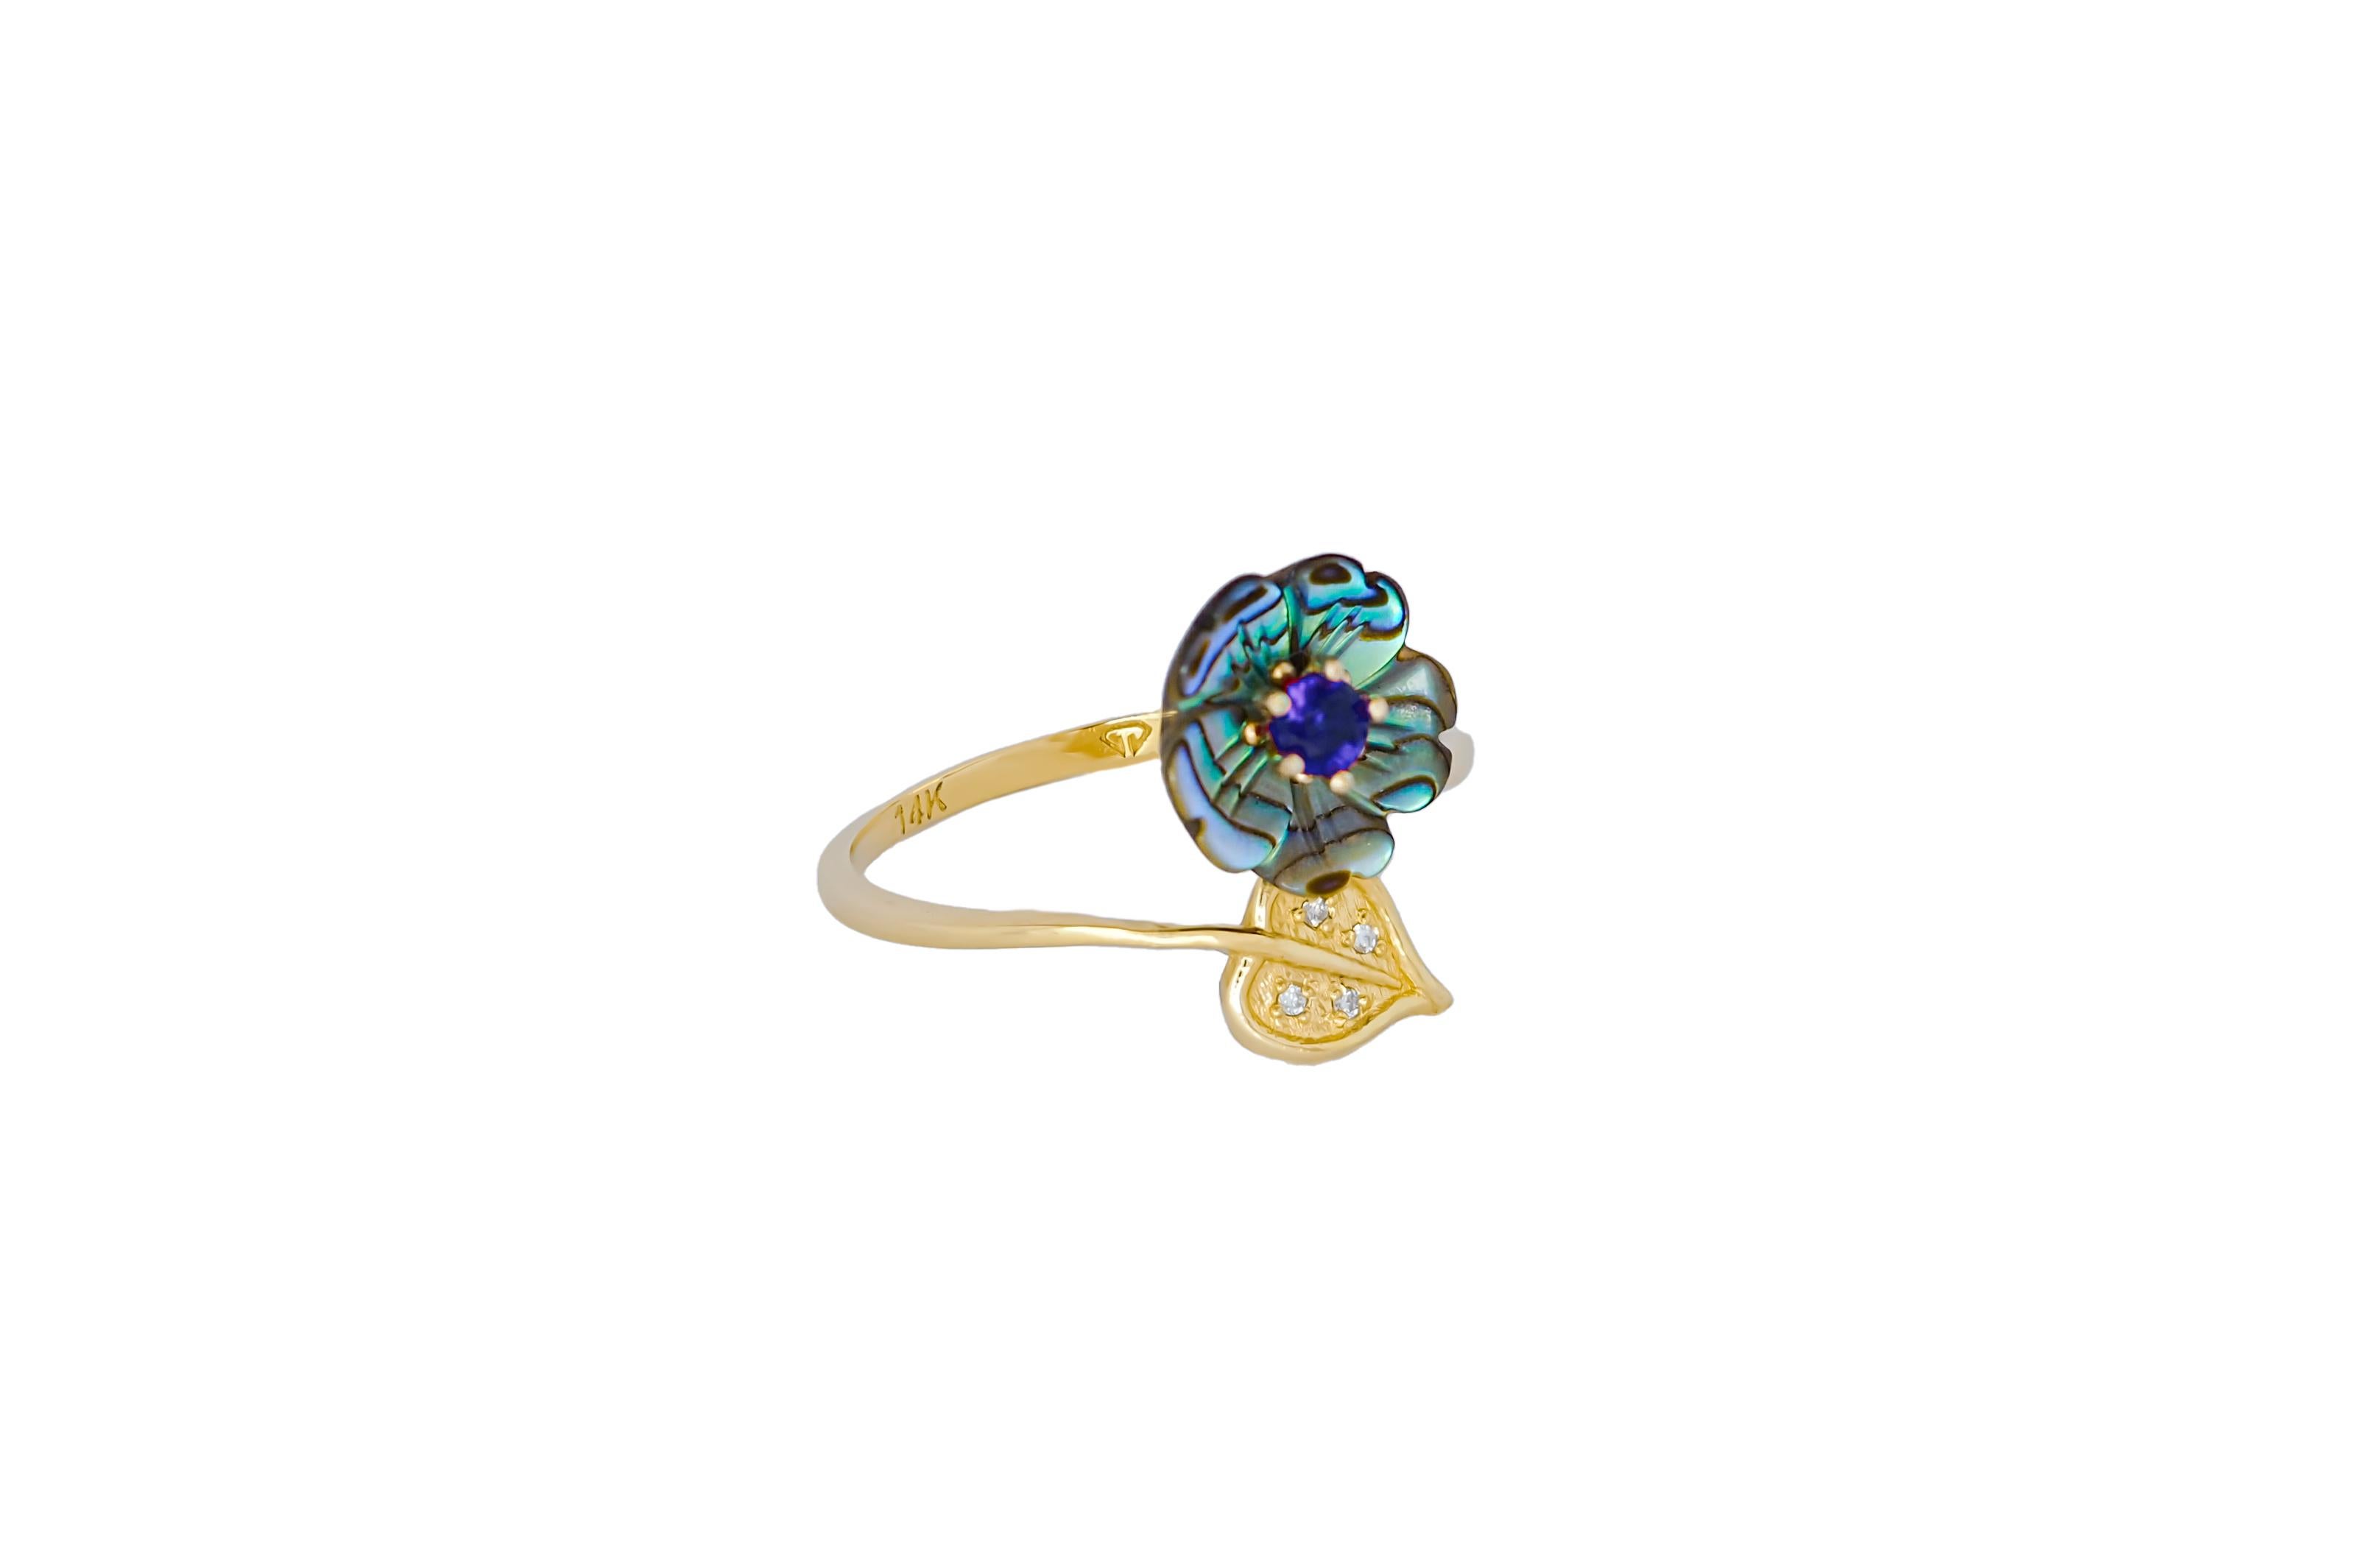 For Sale:  Royal blue gemstone 14k  gold ring.  4